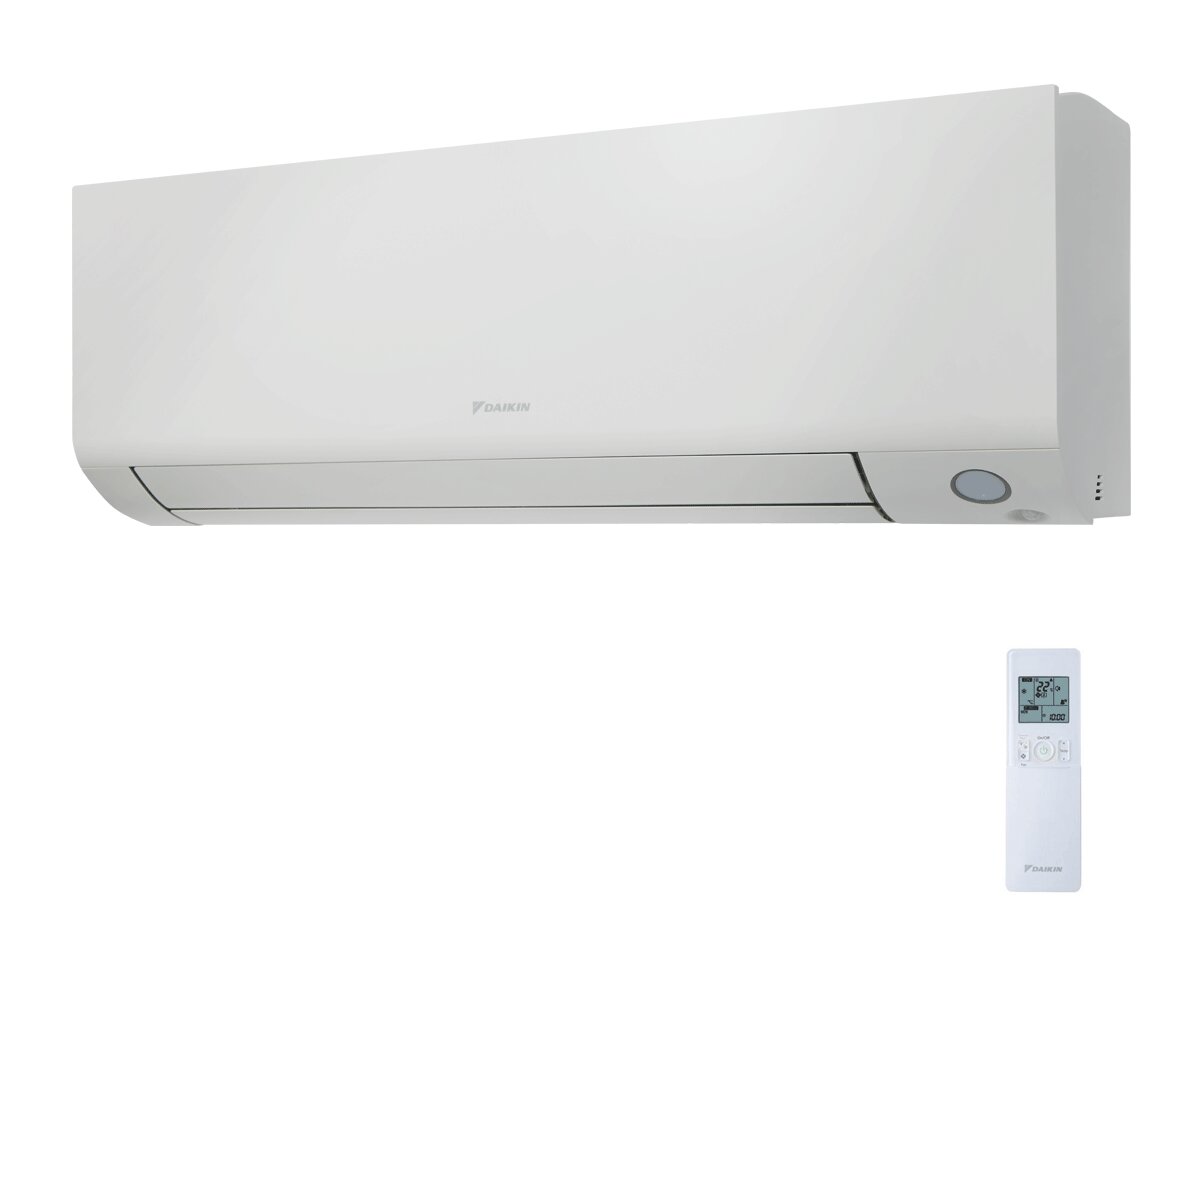 Système de climatisation trial split et eau chaude sanitaire Daikin Multi+ - Unités intérieures Perfera All Seasons 9000+9000+12000 BTU - Réservoir 120 l